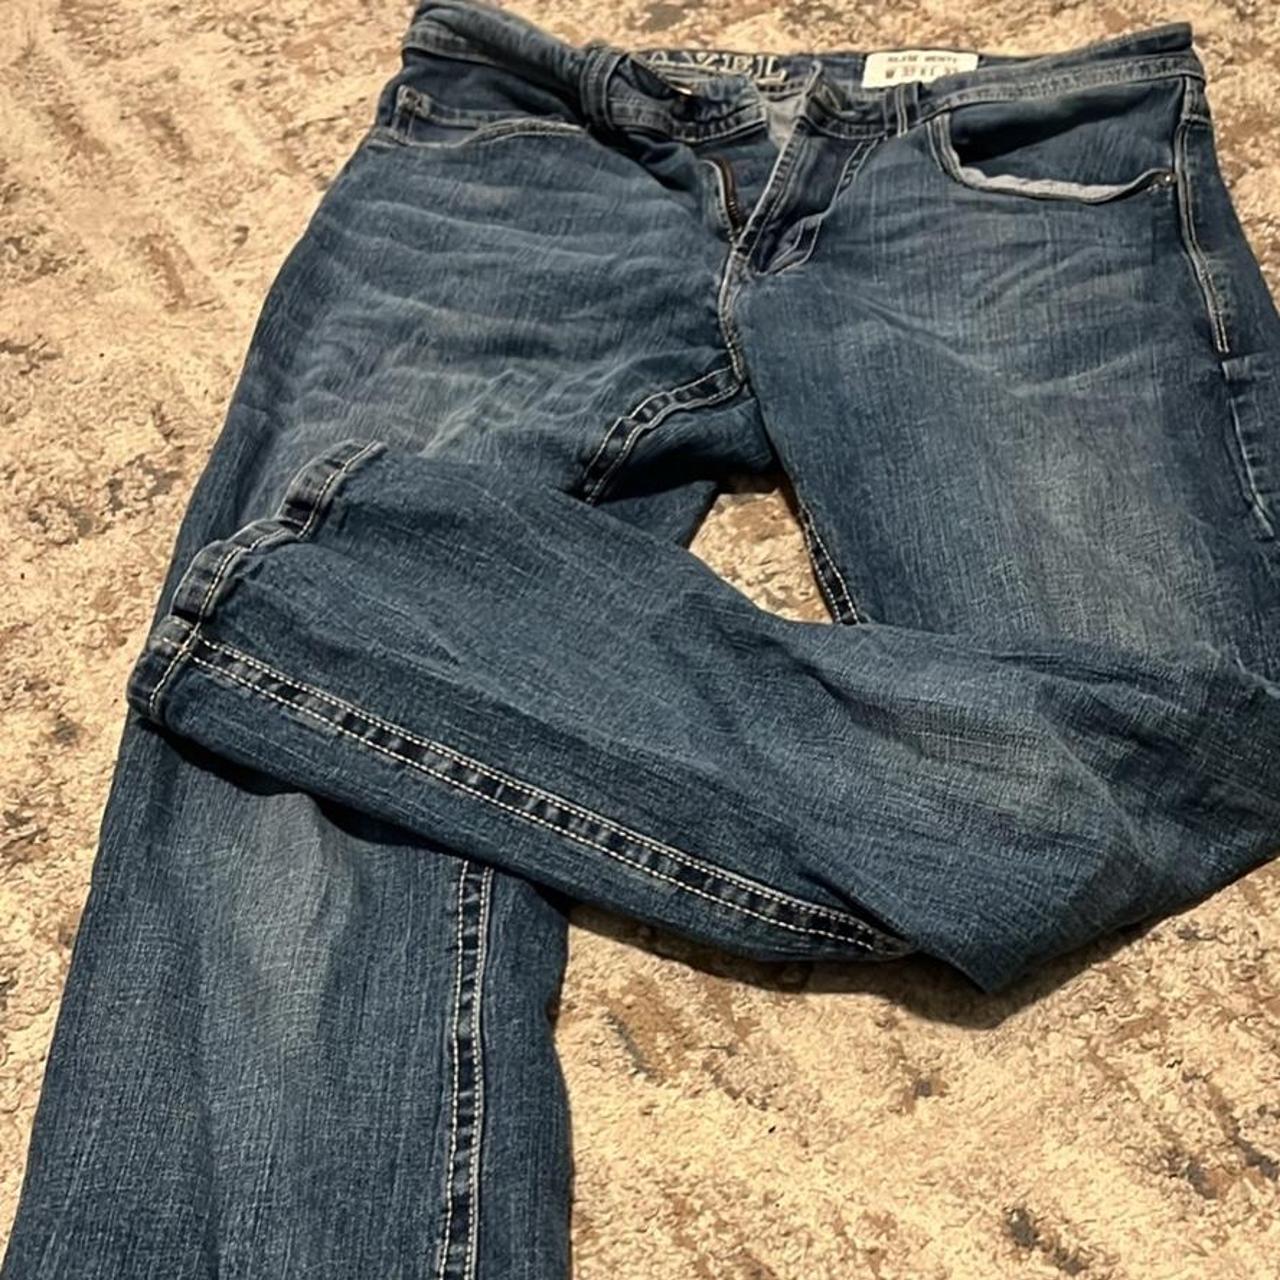 TK AXEL blue jeans (W 32 , L 32) - Depop